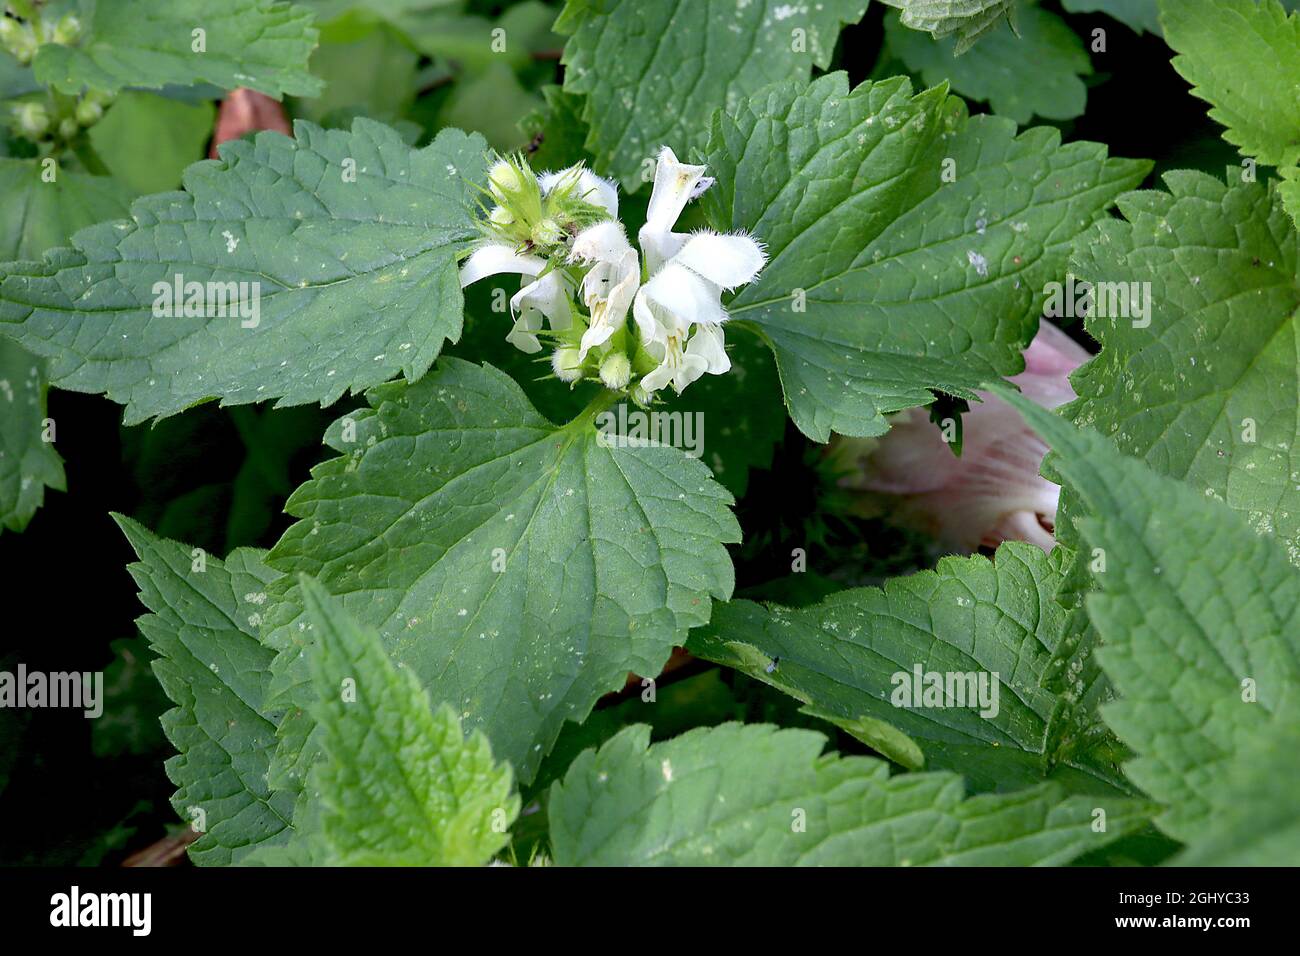 Lamium Album weiße Brennnessel – weiße Kapuzenblumen und große, mittelgrüne Ovatblätter, August, England, Großbritannien Stockfoto